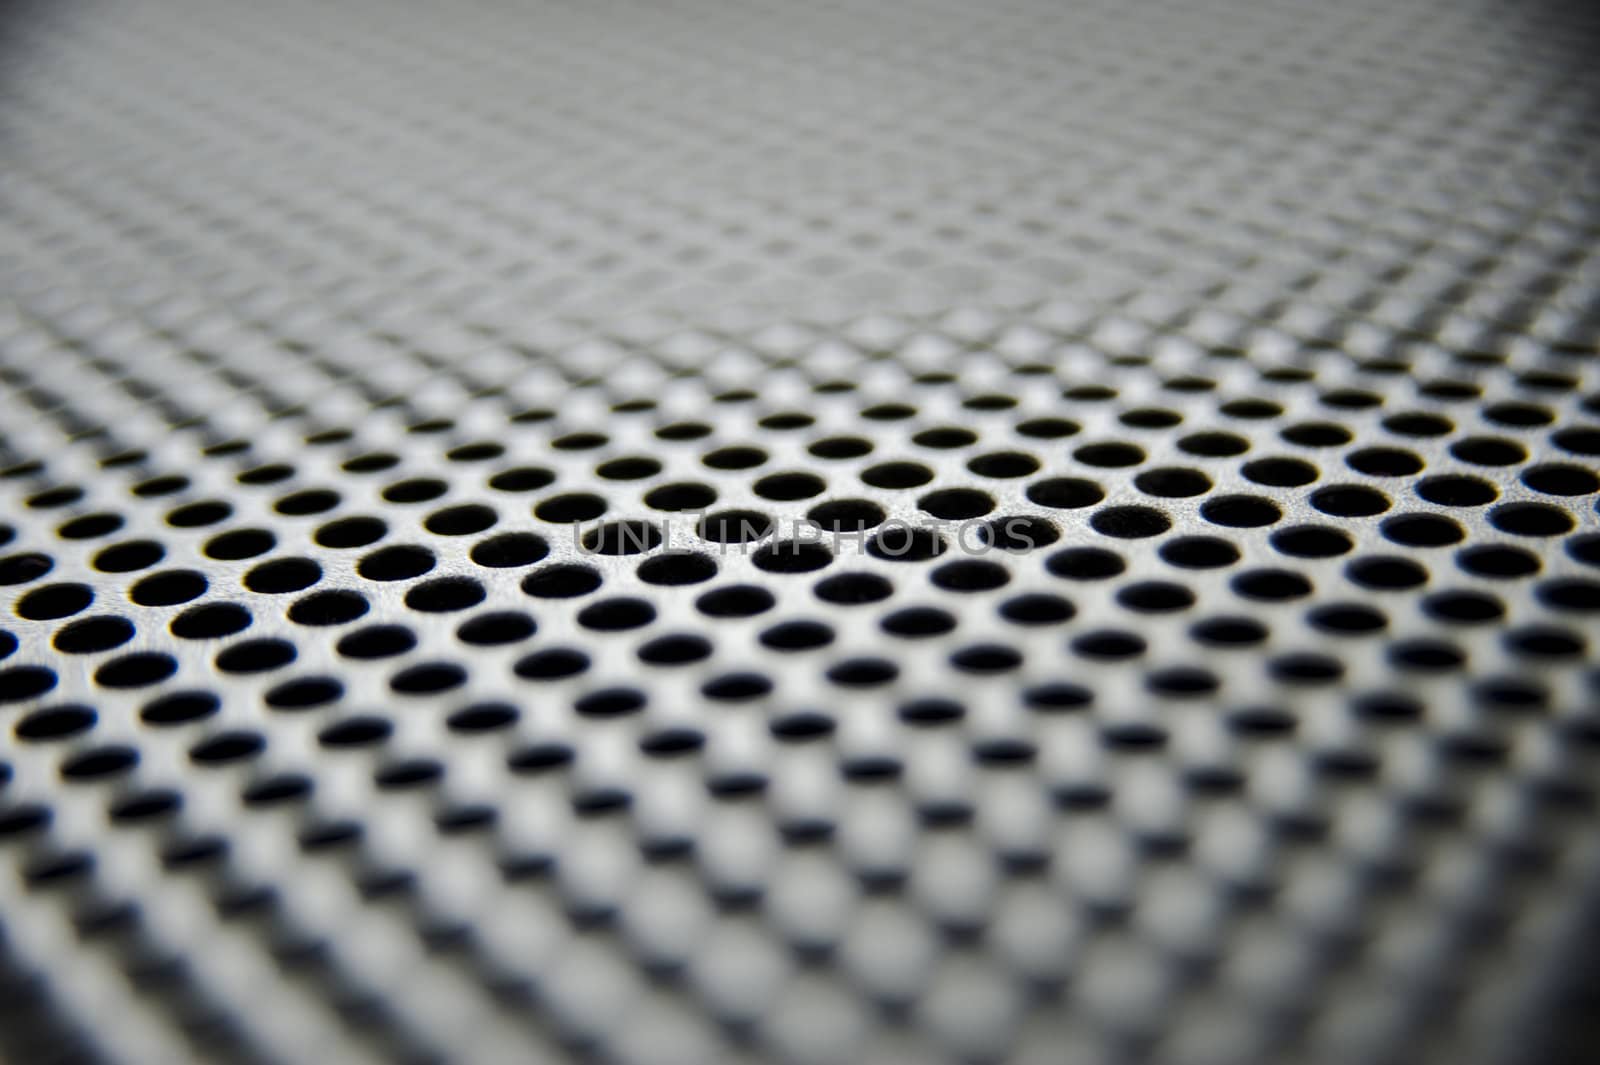 Metal sheet with holes taken as closeup